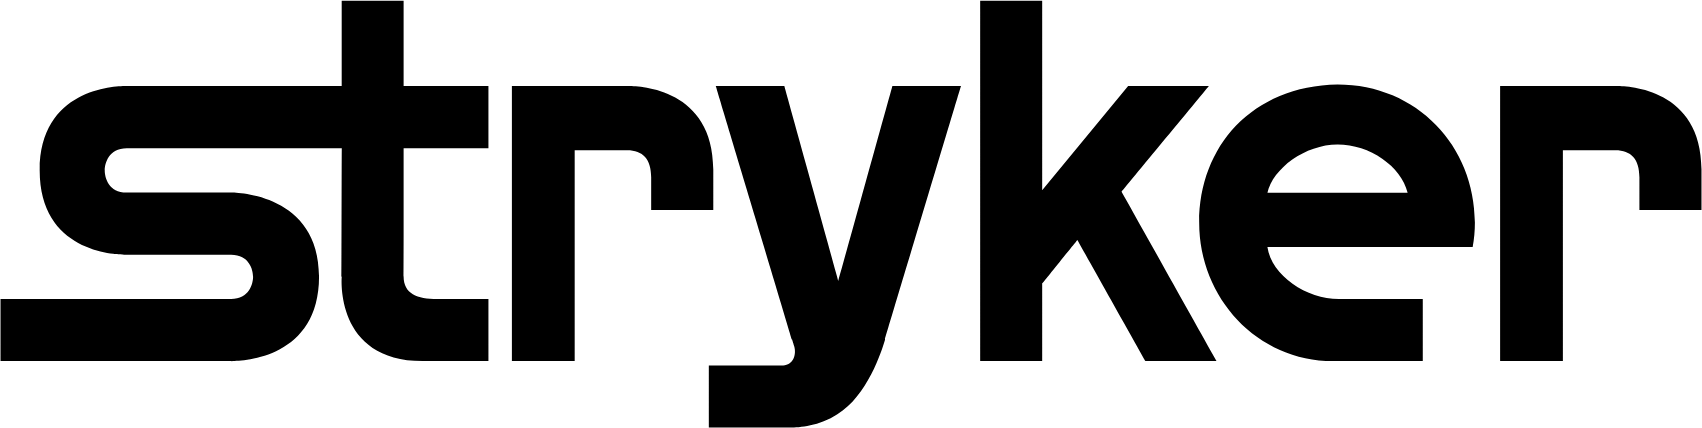 Stryker Corporation logo large (transparent PNG)